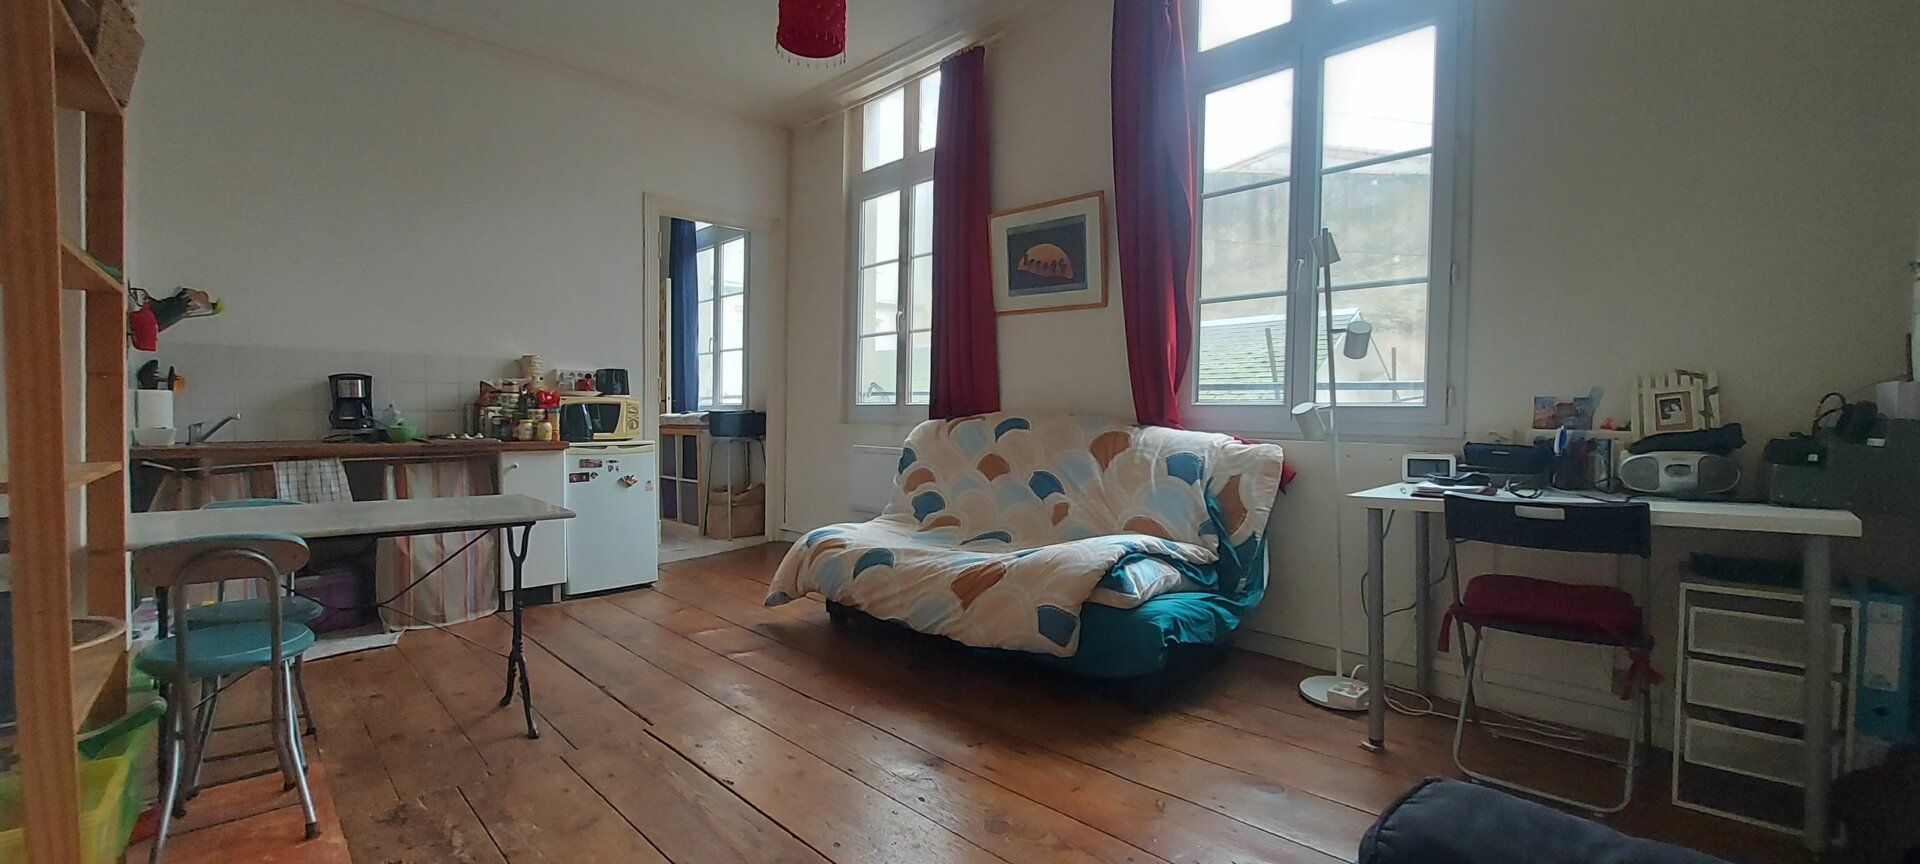 Appartement à vendre 1 30.14m2 à La Rochelle vignette-2